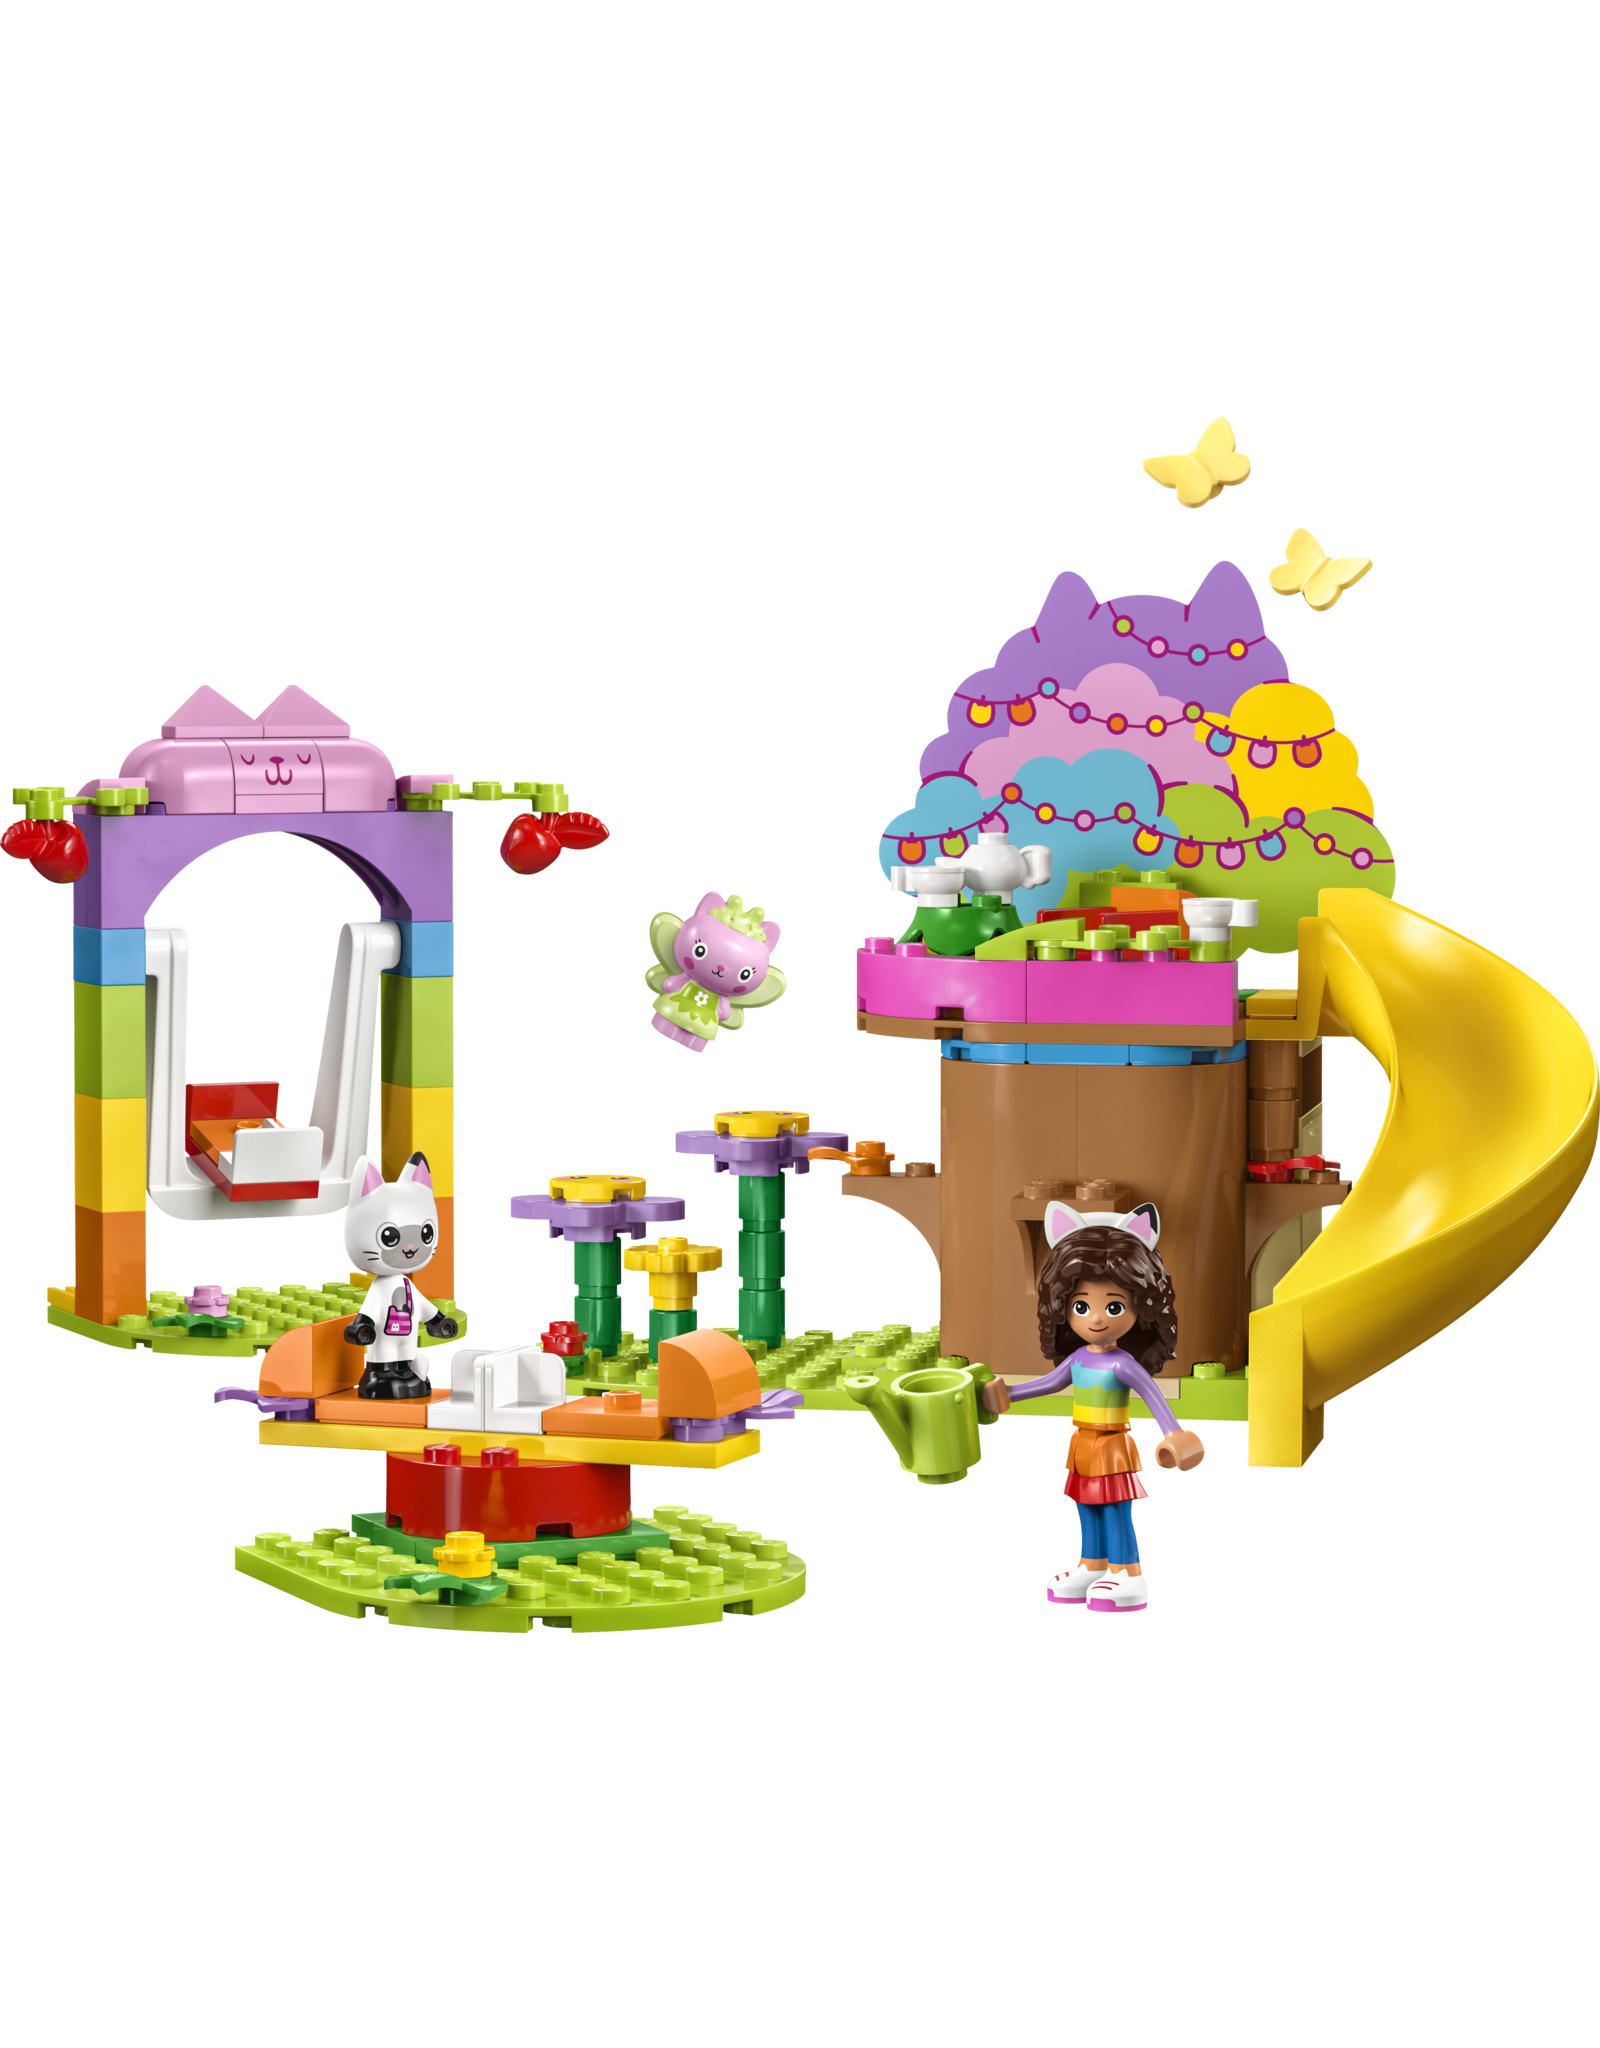 LEGO Gabby's Dollhouse  10787 Kitty Fairy's Garden Party